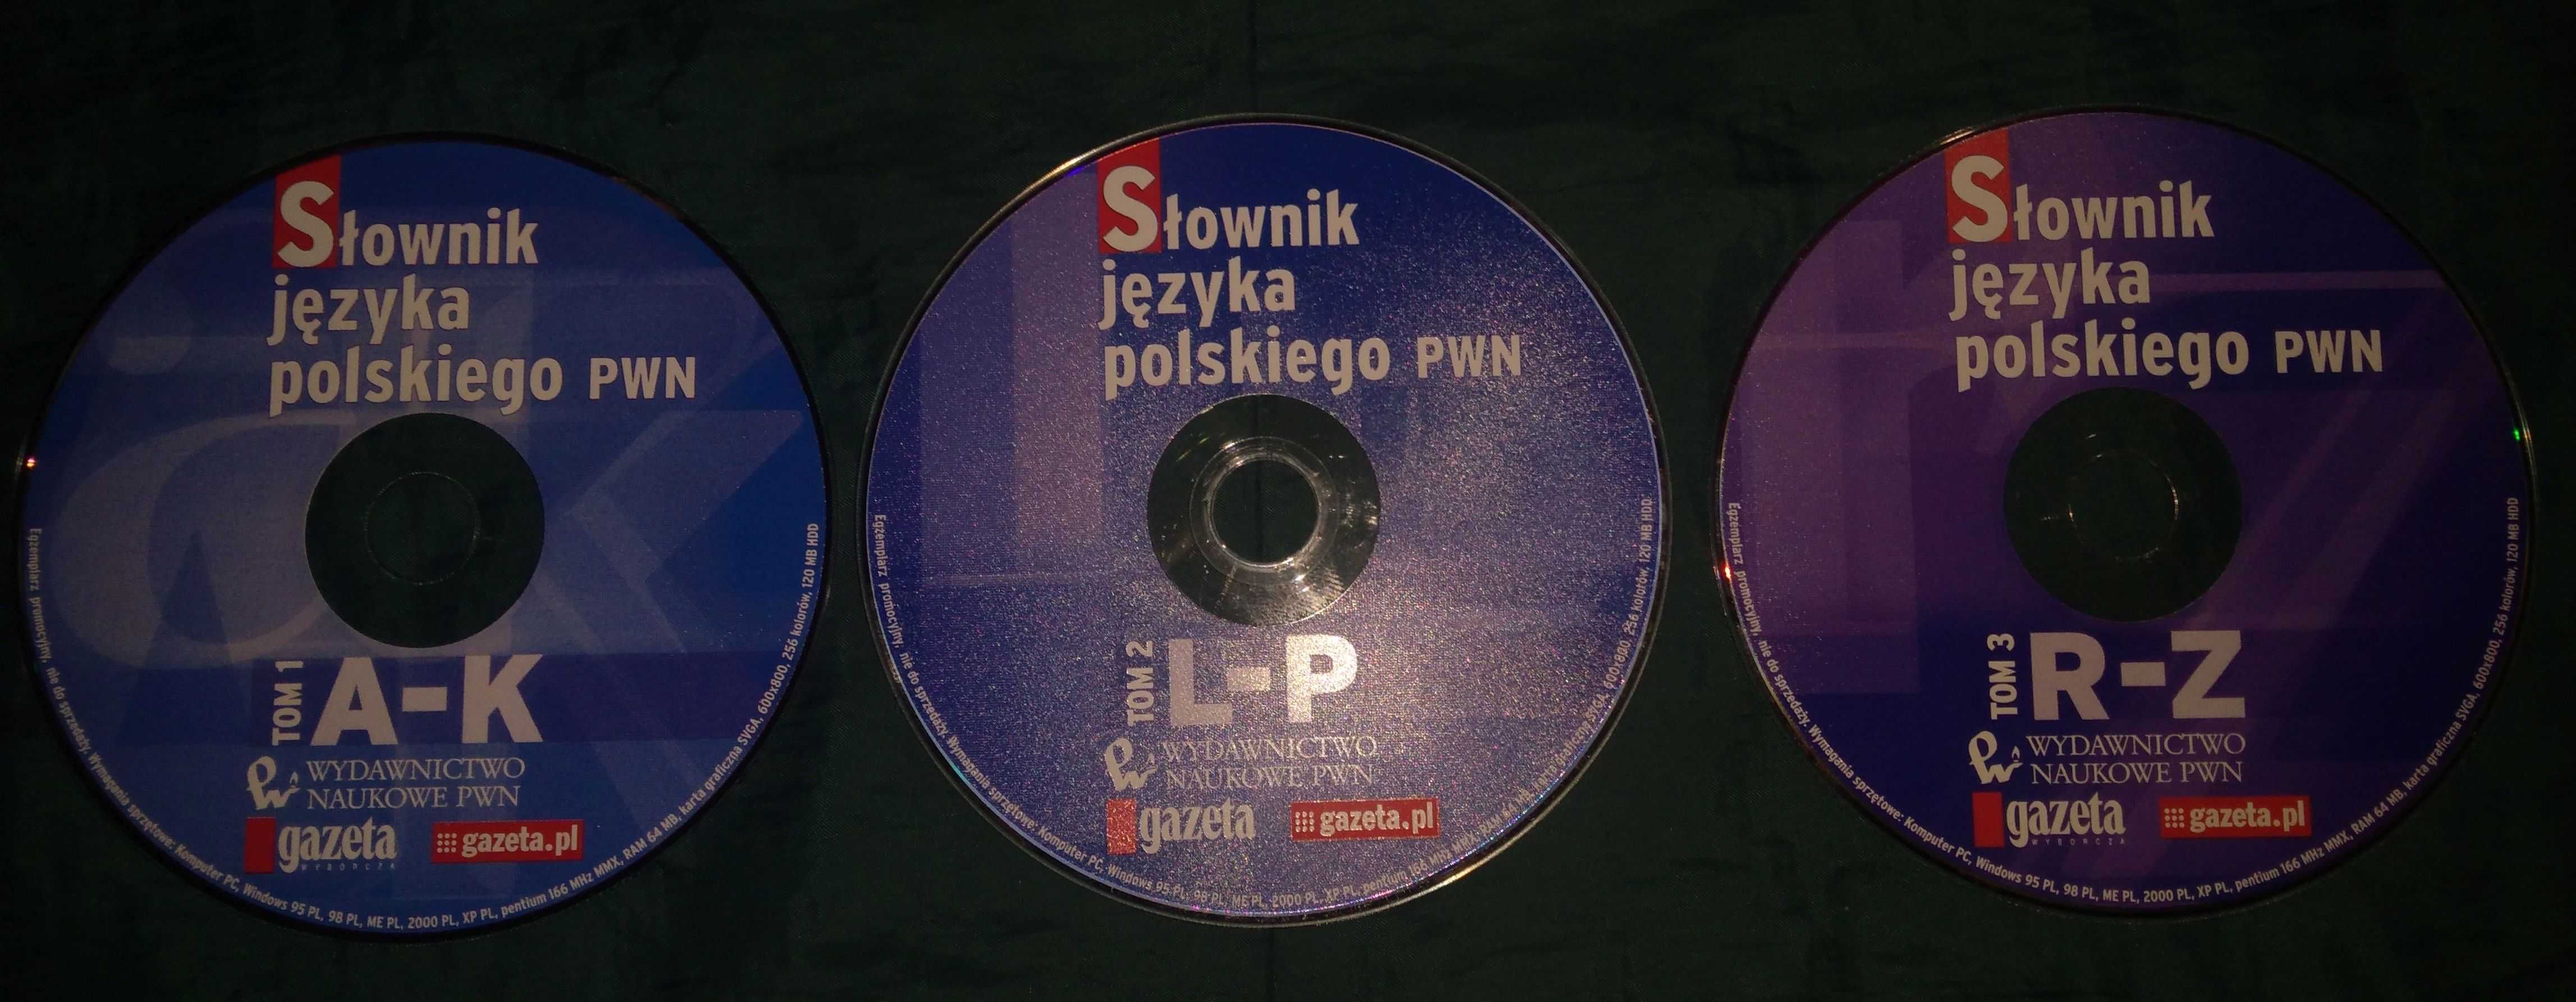 Słownik języka polskiego PWN 3 płyty CD